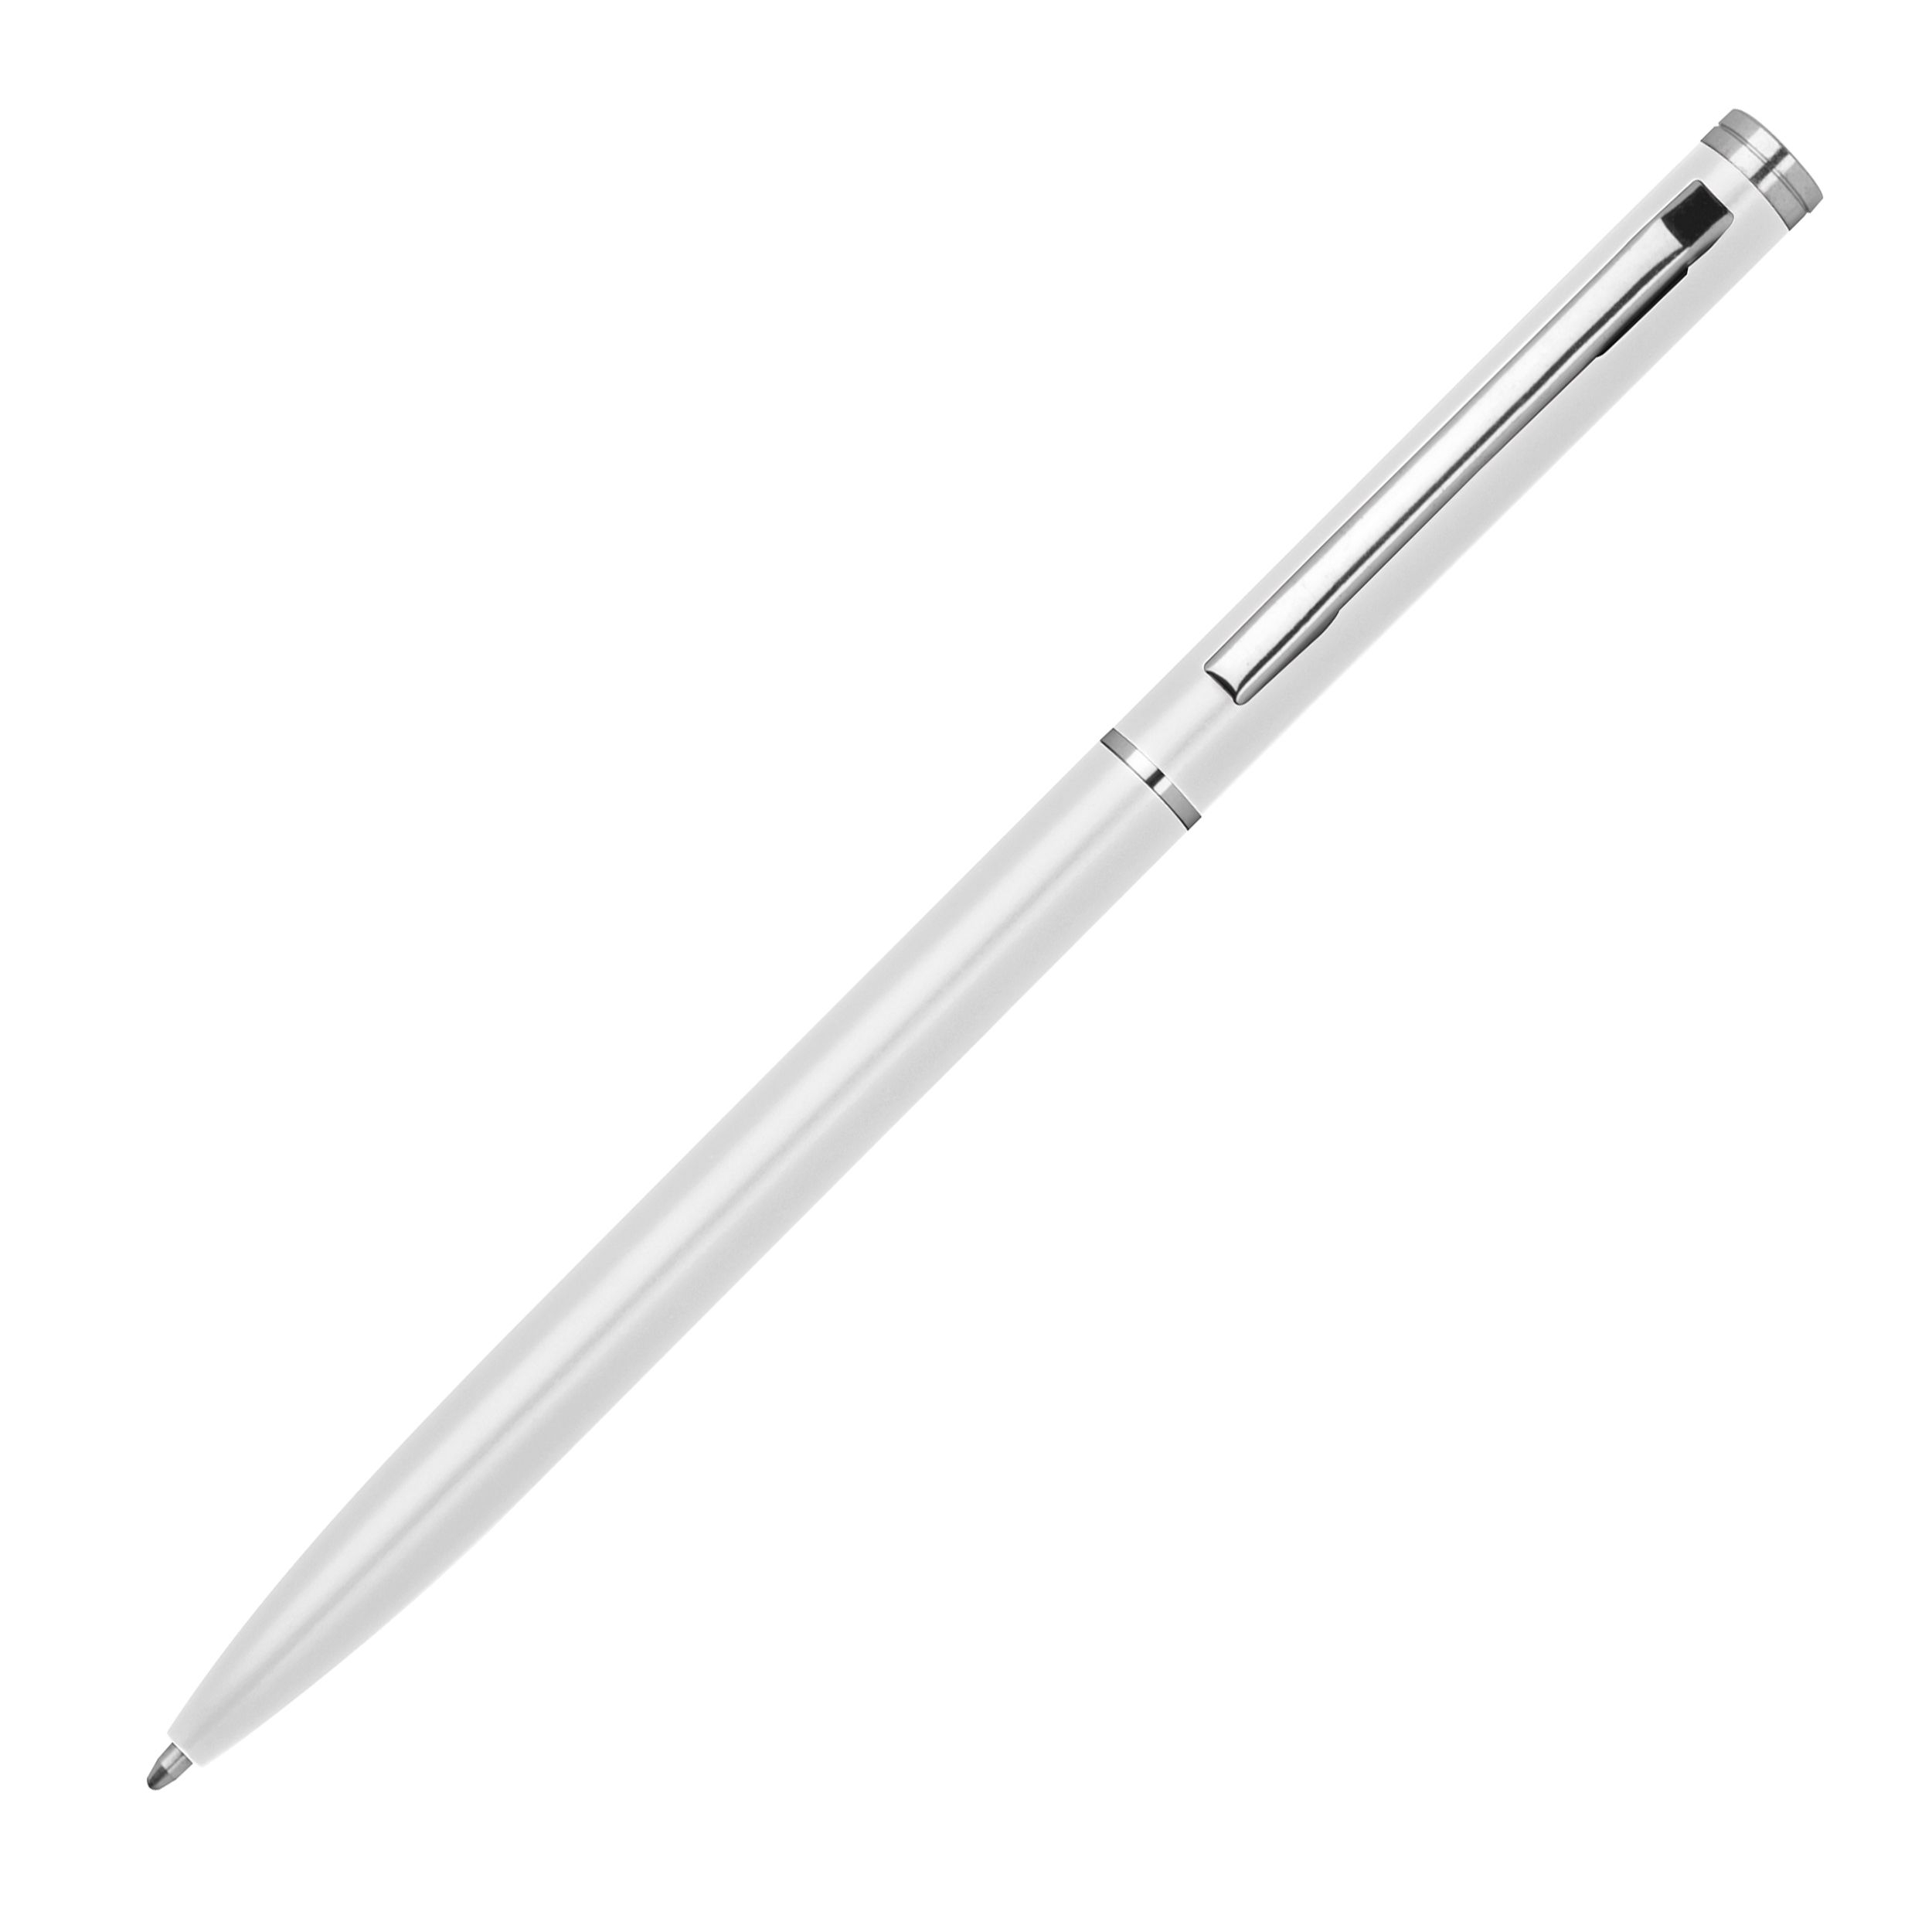 Metall Kugelschreiber in schlanker Form, weiß